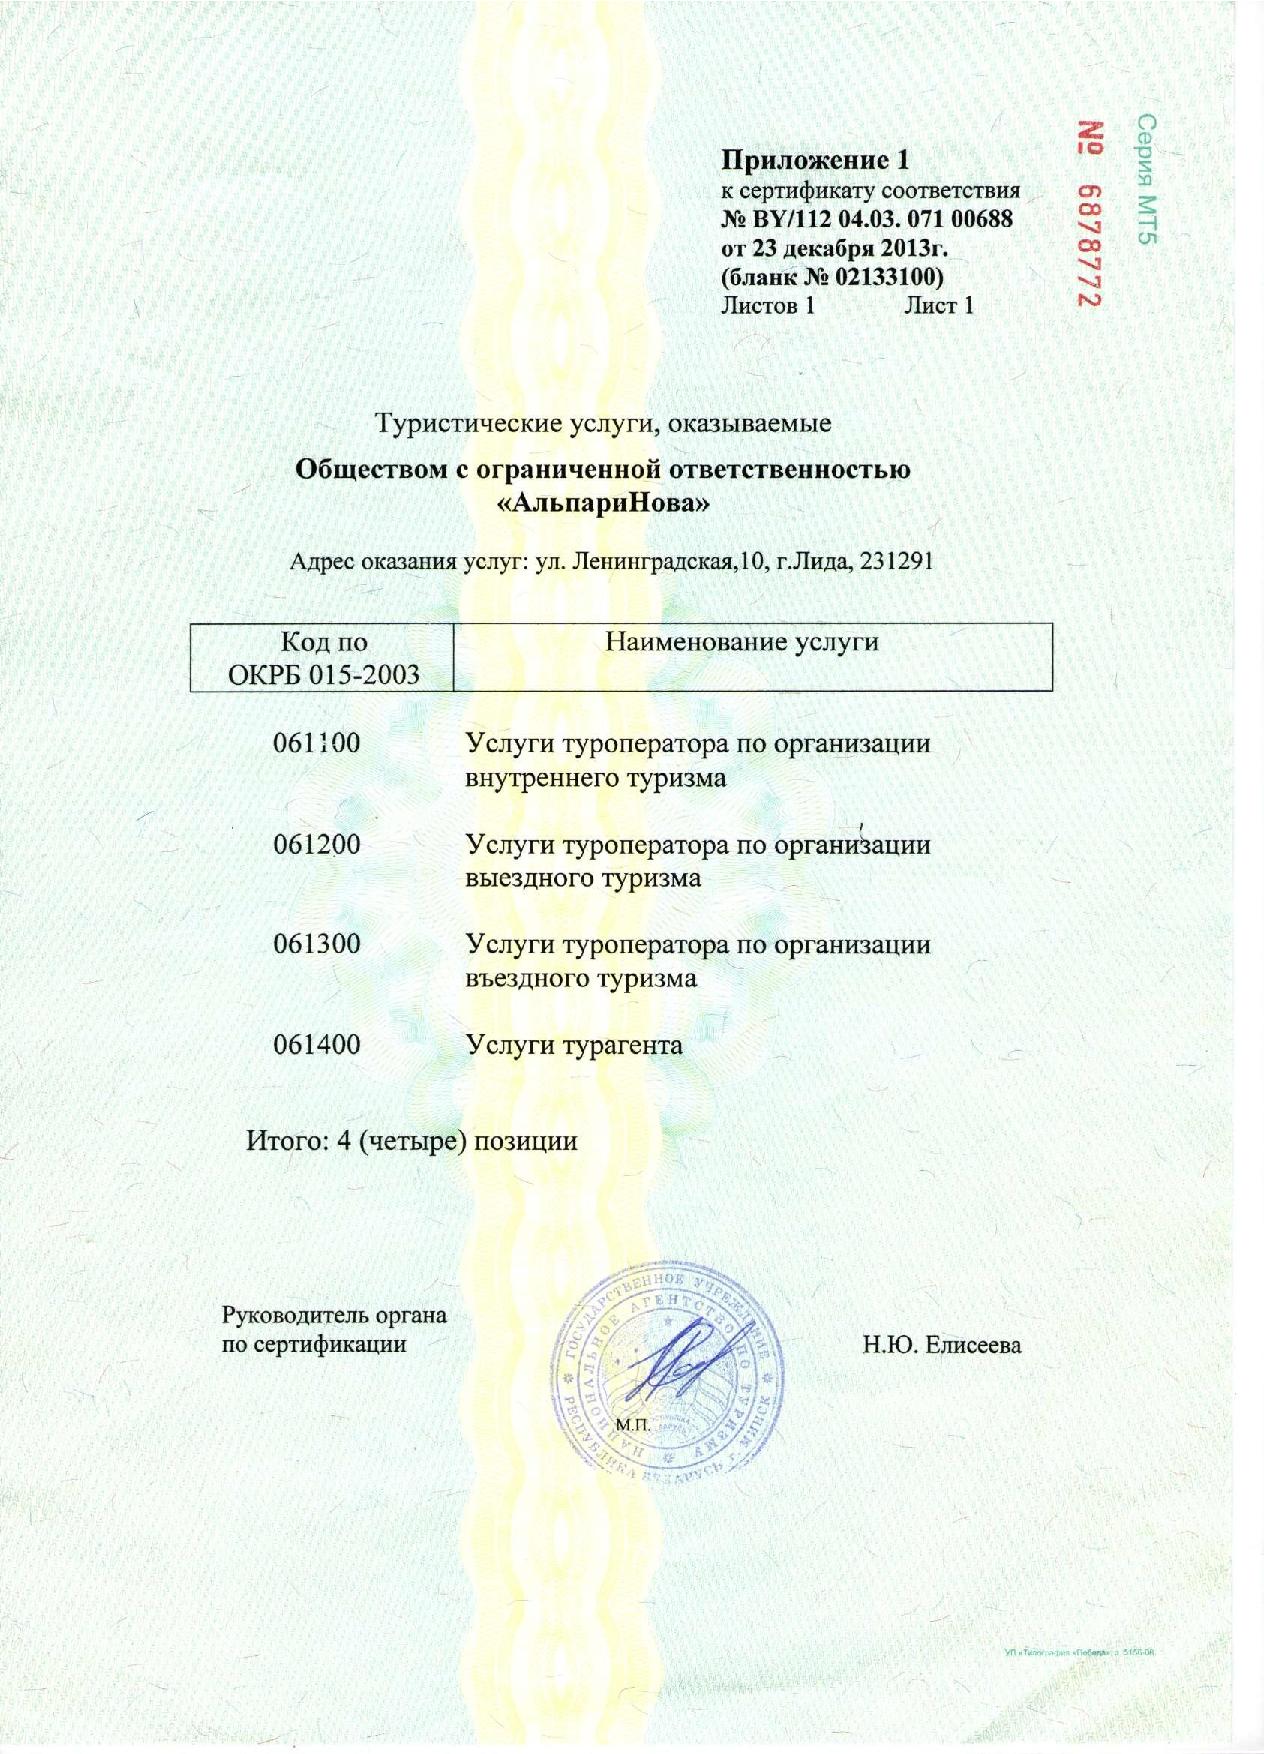 Сертификат АльпариНова 2